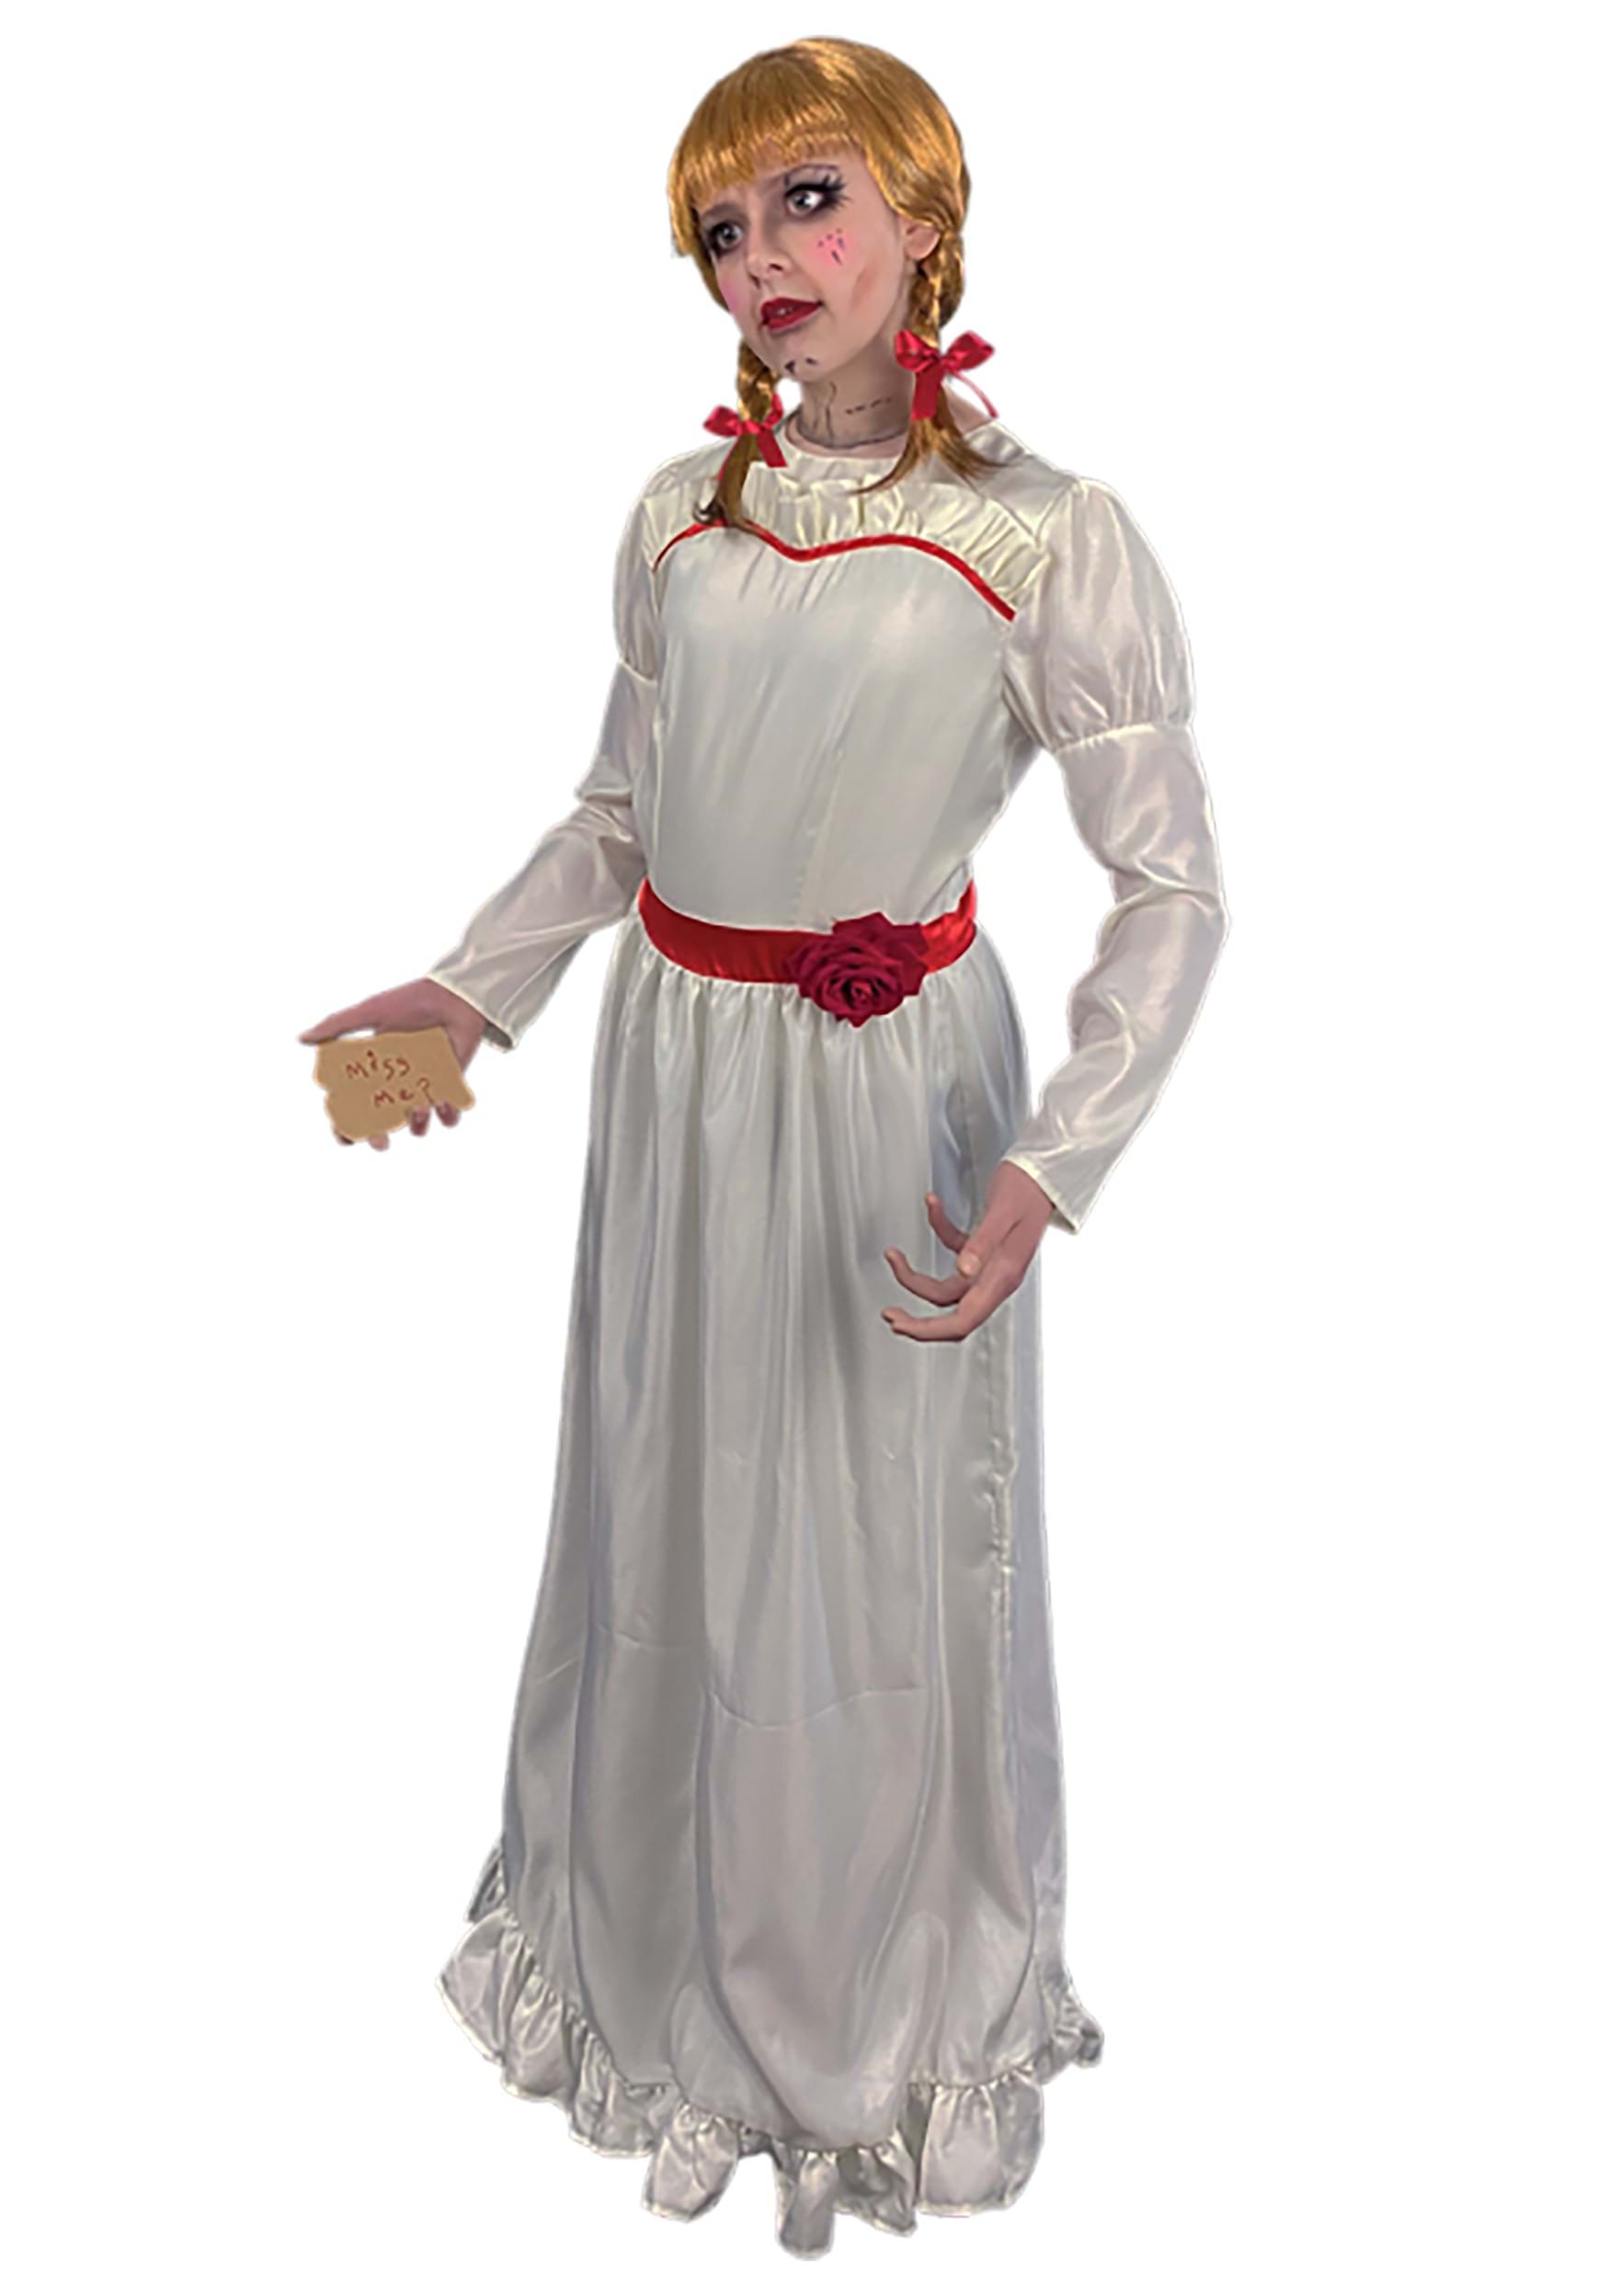 El disfraz de Conjuring Annabelle para mujeres Multicolor Colombia